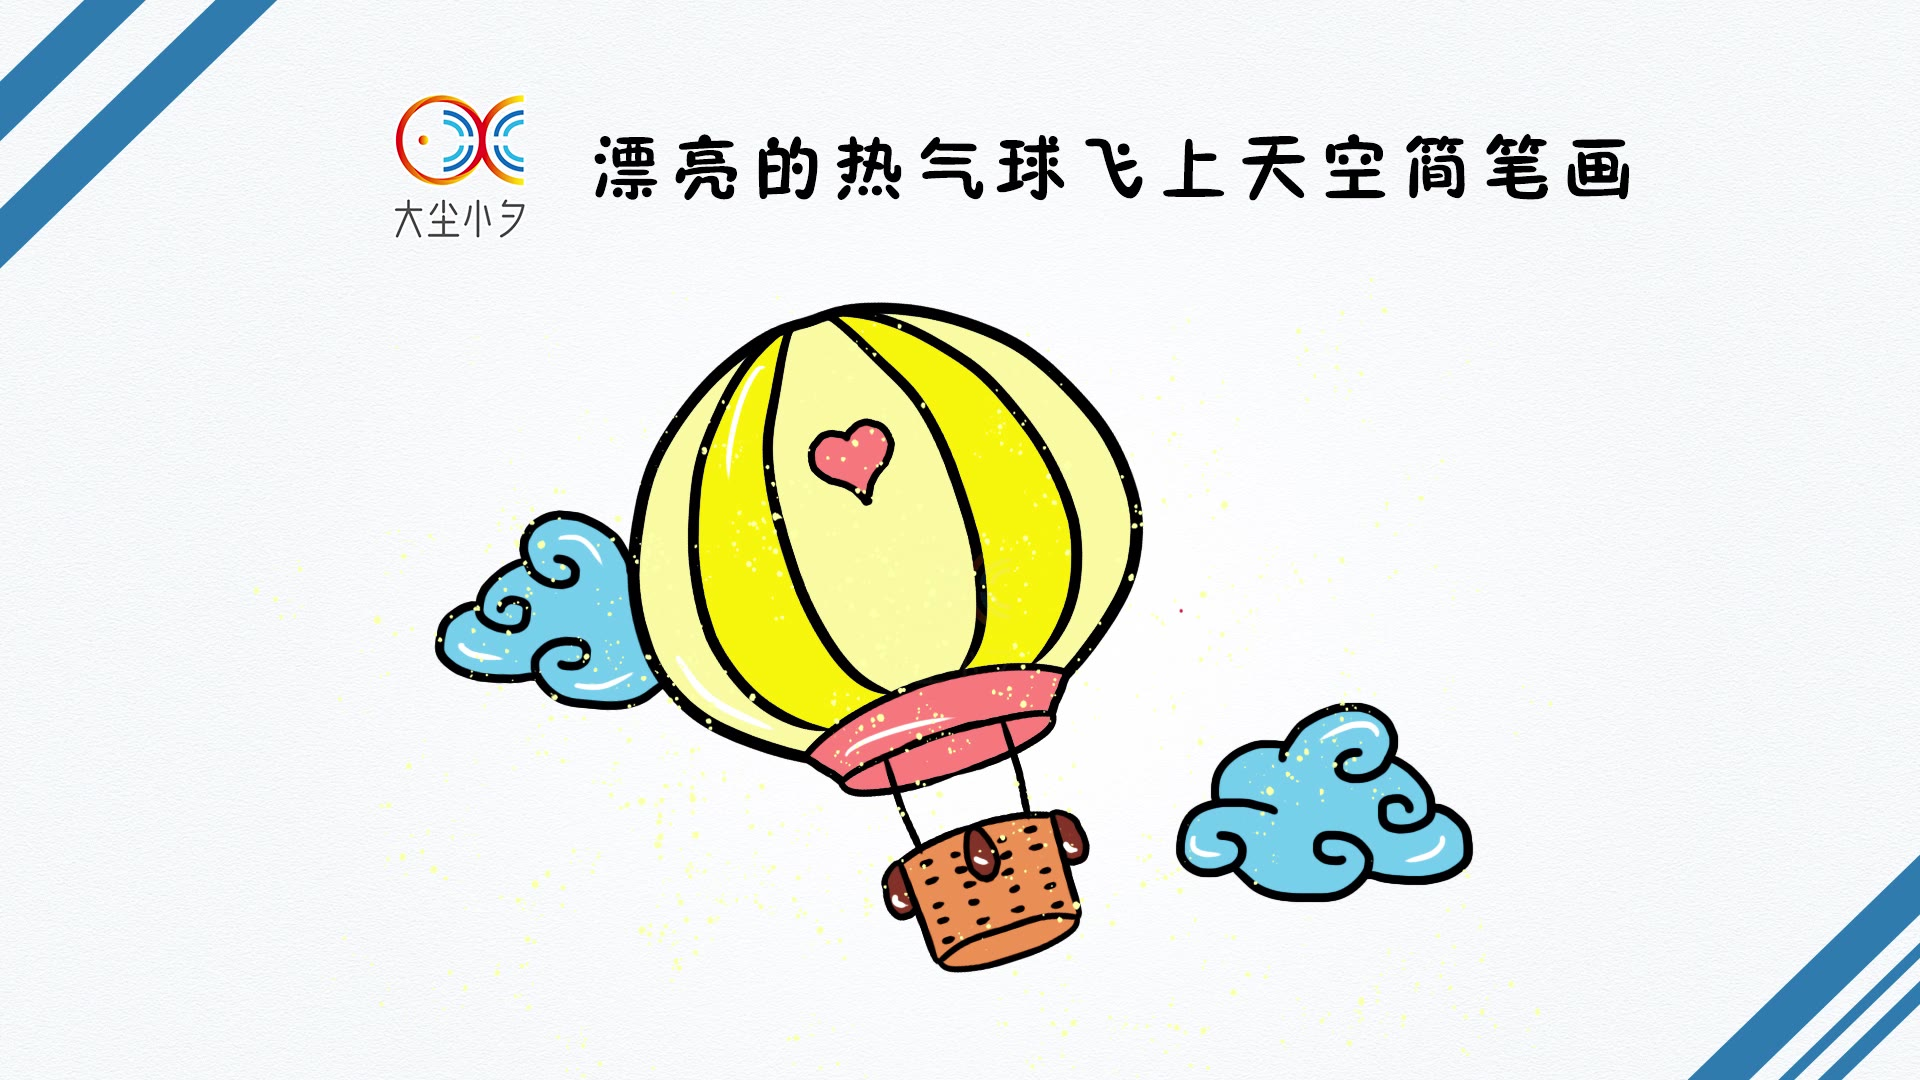 漂亮的热气球飞上天空简笔画,30秒看绘